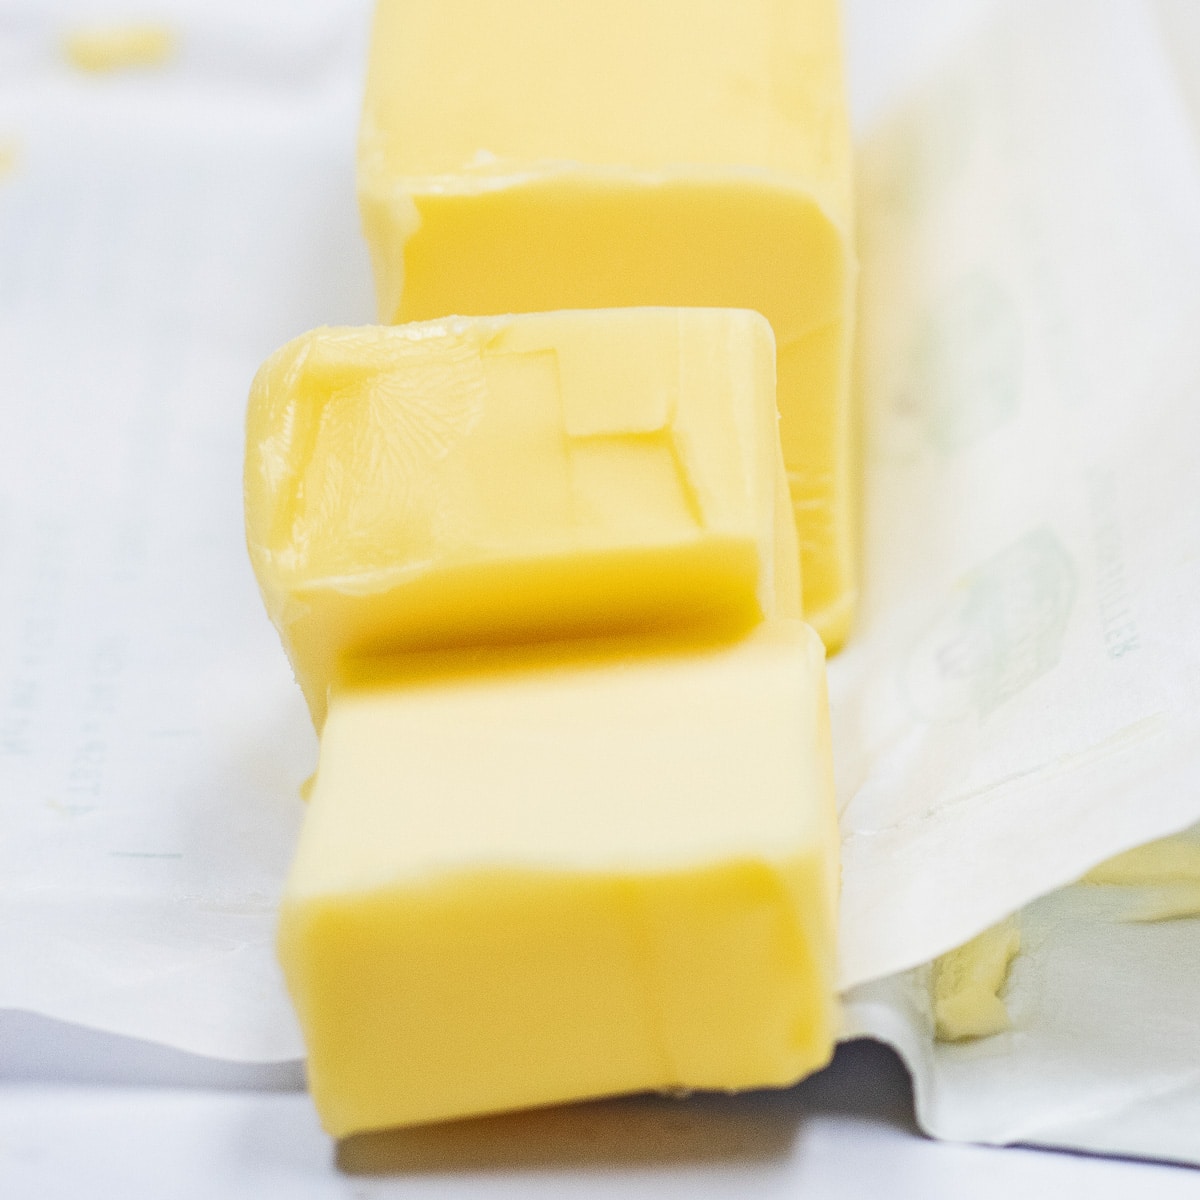 Melhores opções de substituto de manteiga para substituir a manteiga europeia fatiada mostrada aqui.